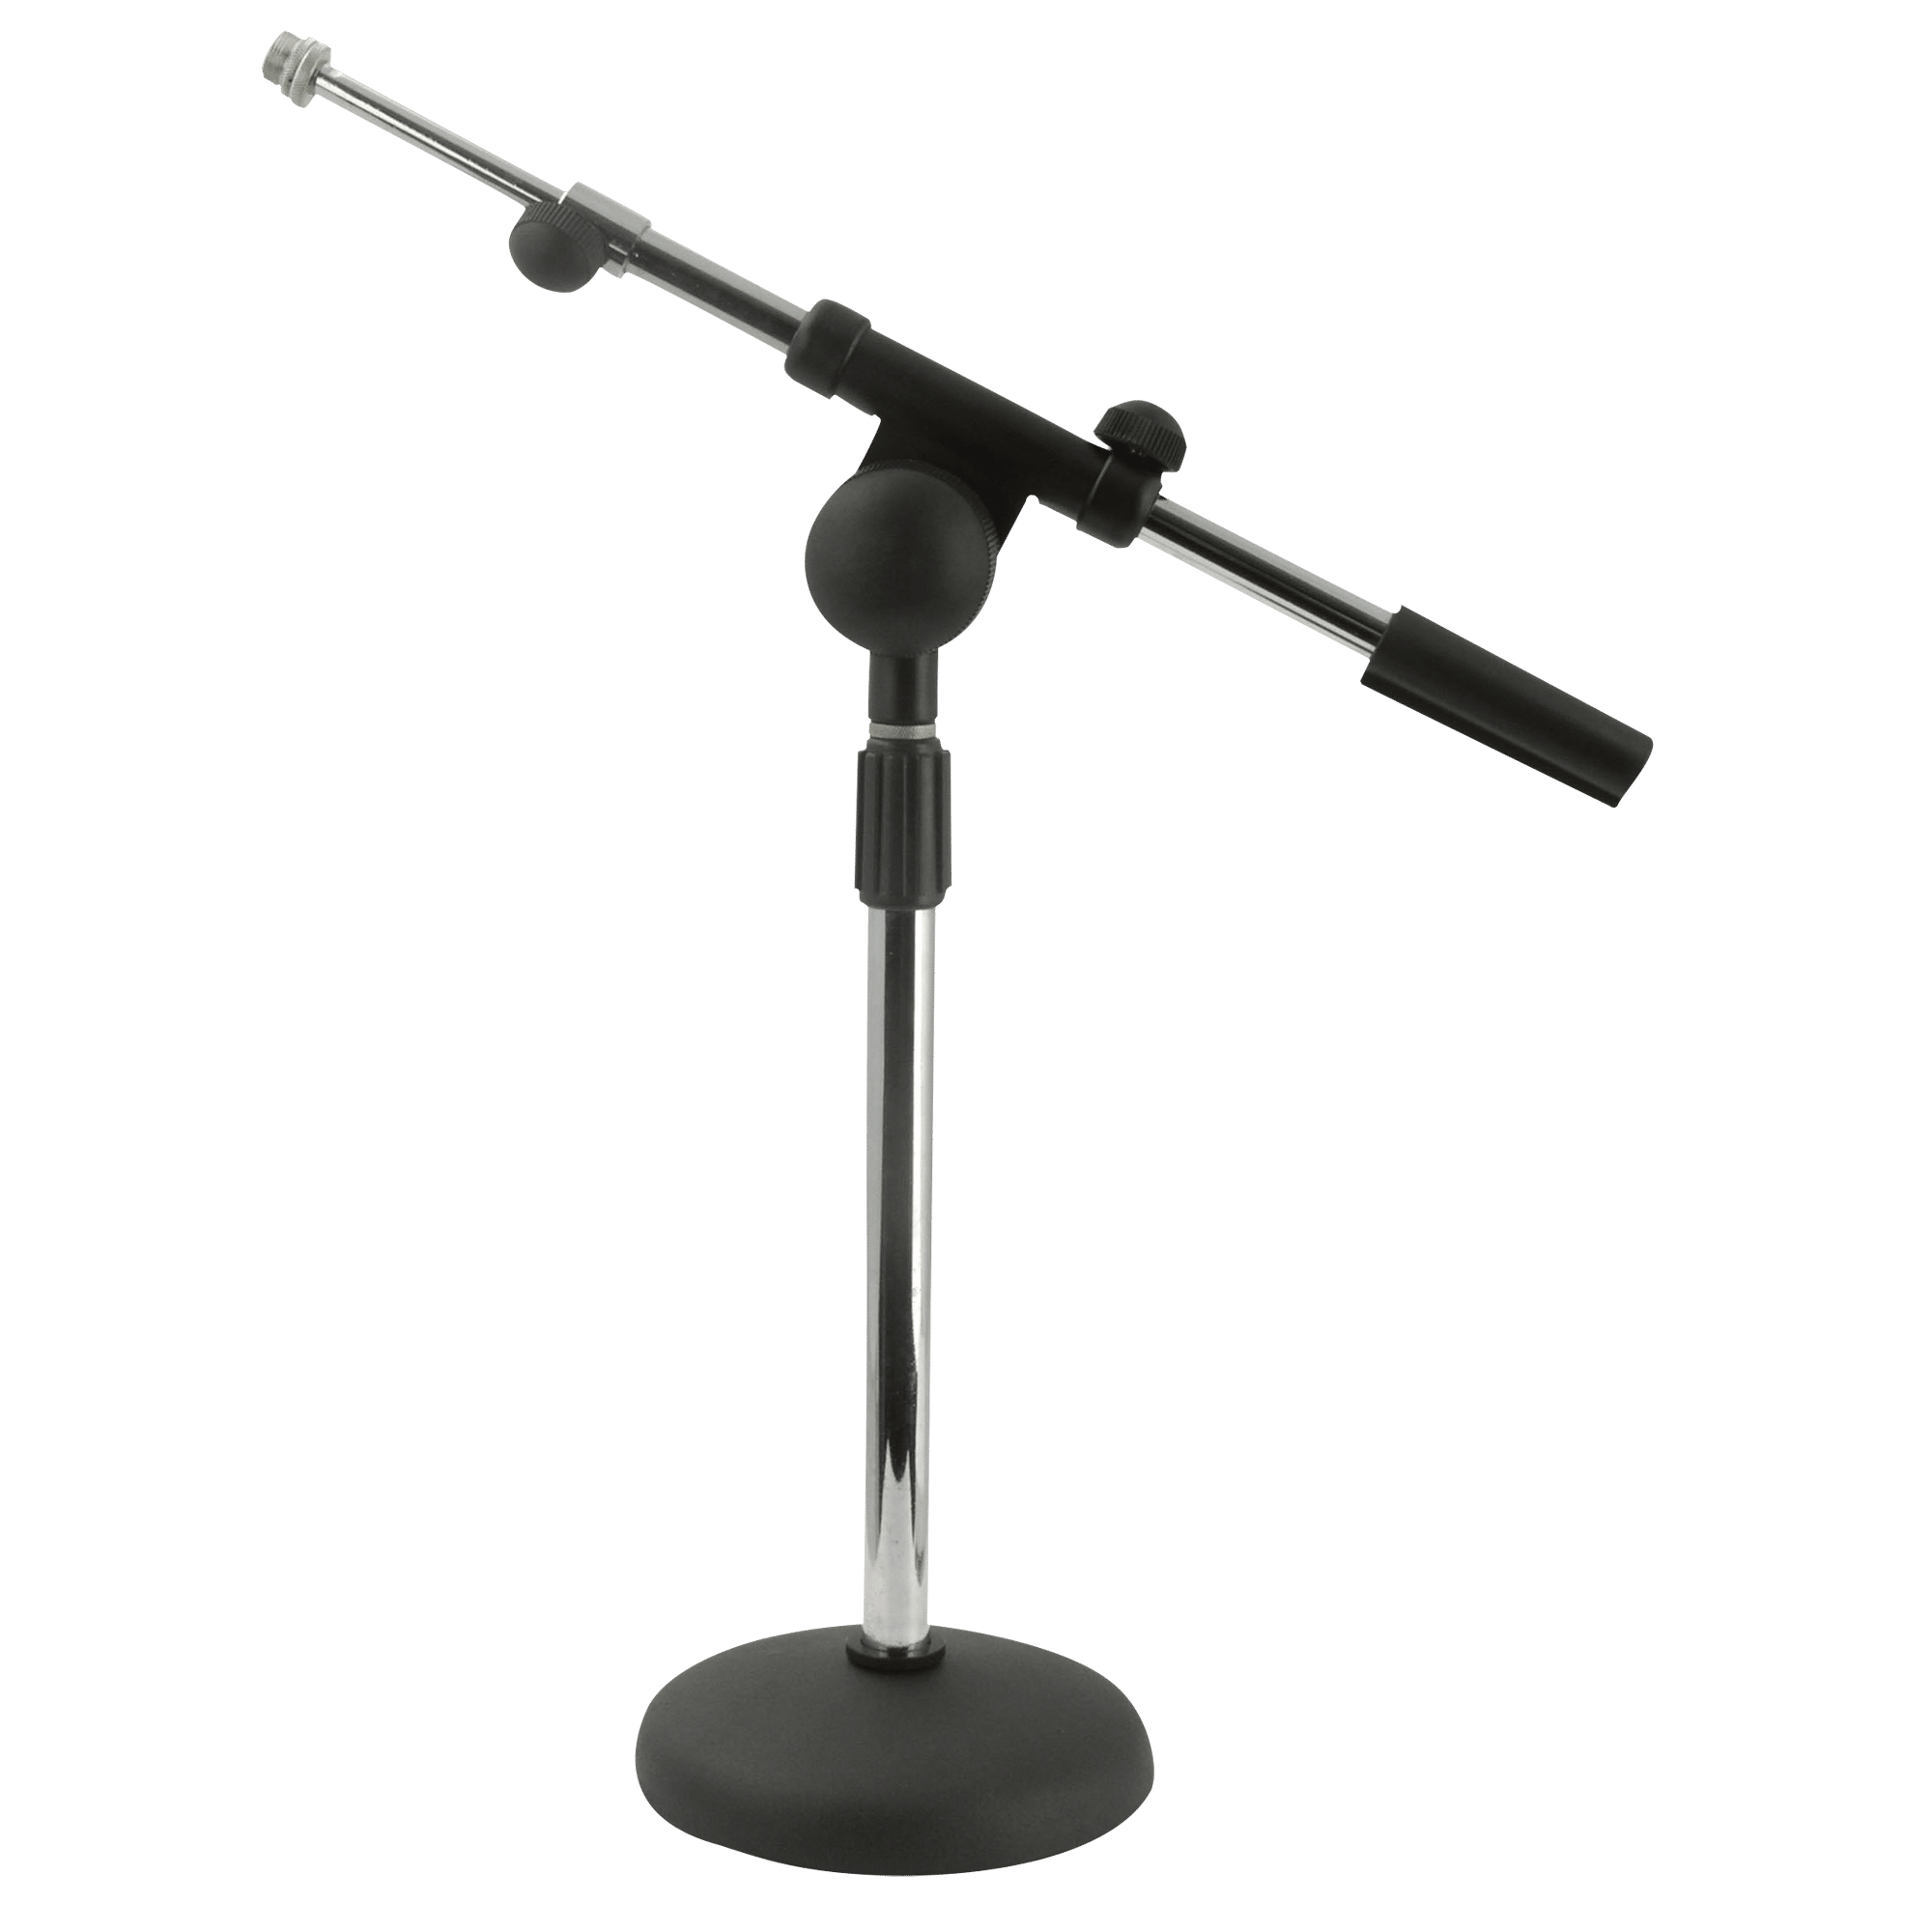 Desk Microphone Stand - Onlinediscowinkel.nl